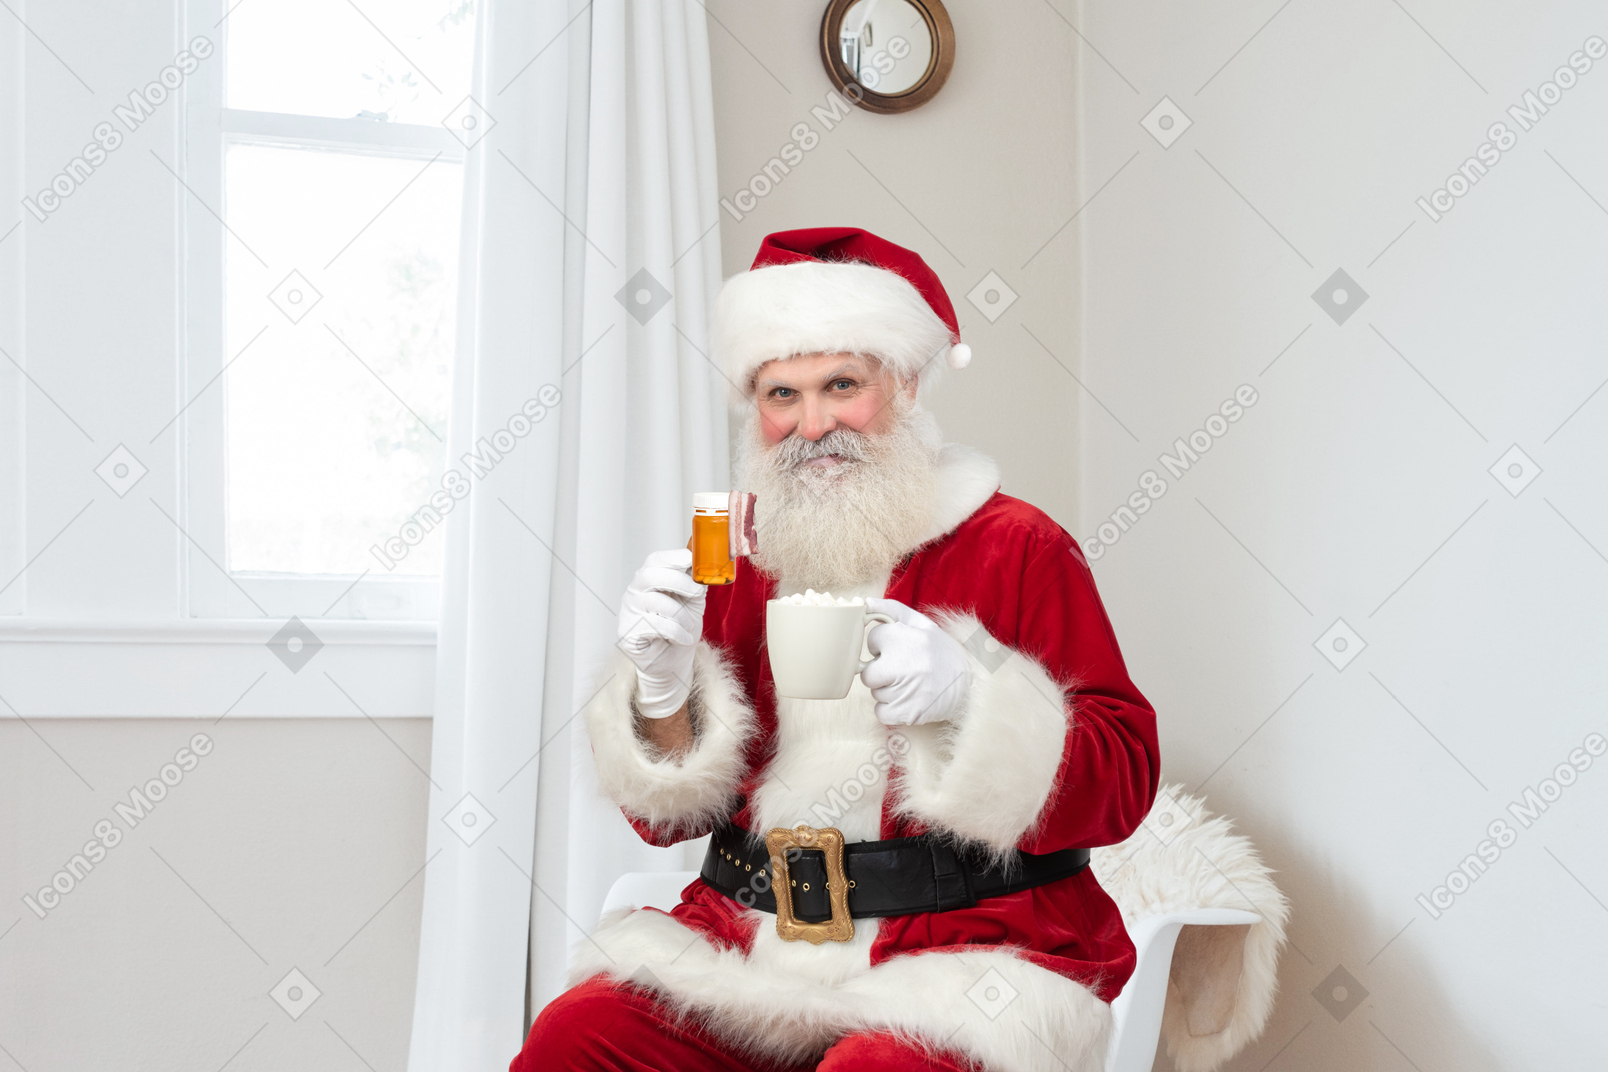 Santa claus empfiehlt ihnen, gesund zu bleiben und tee zu trinken